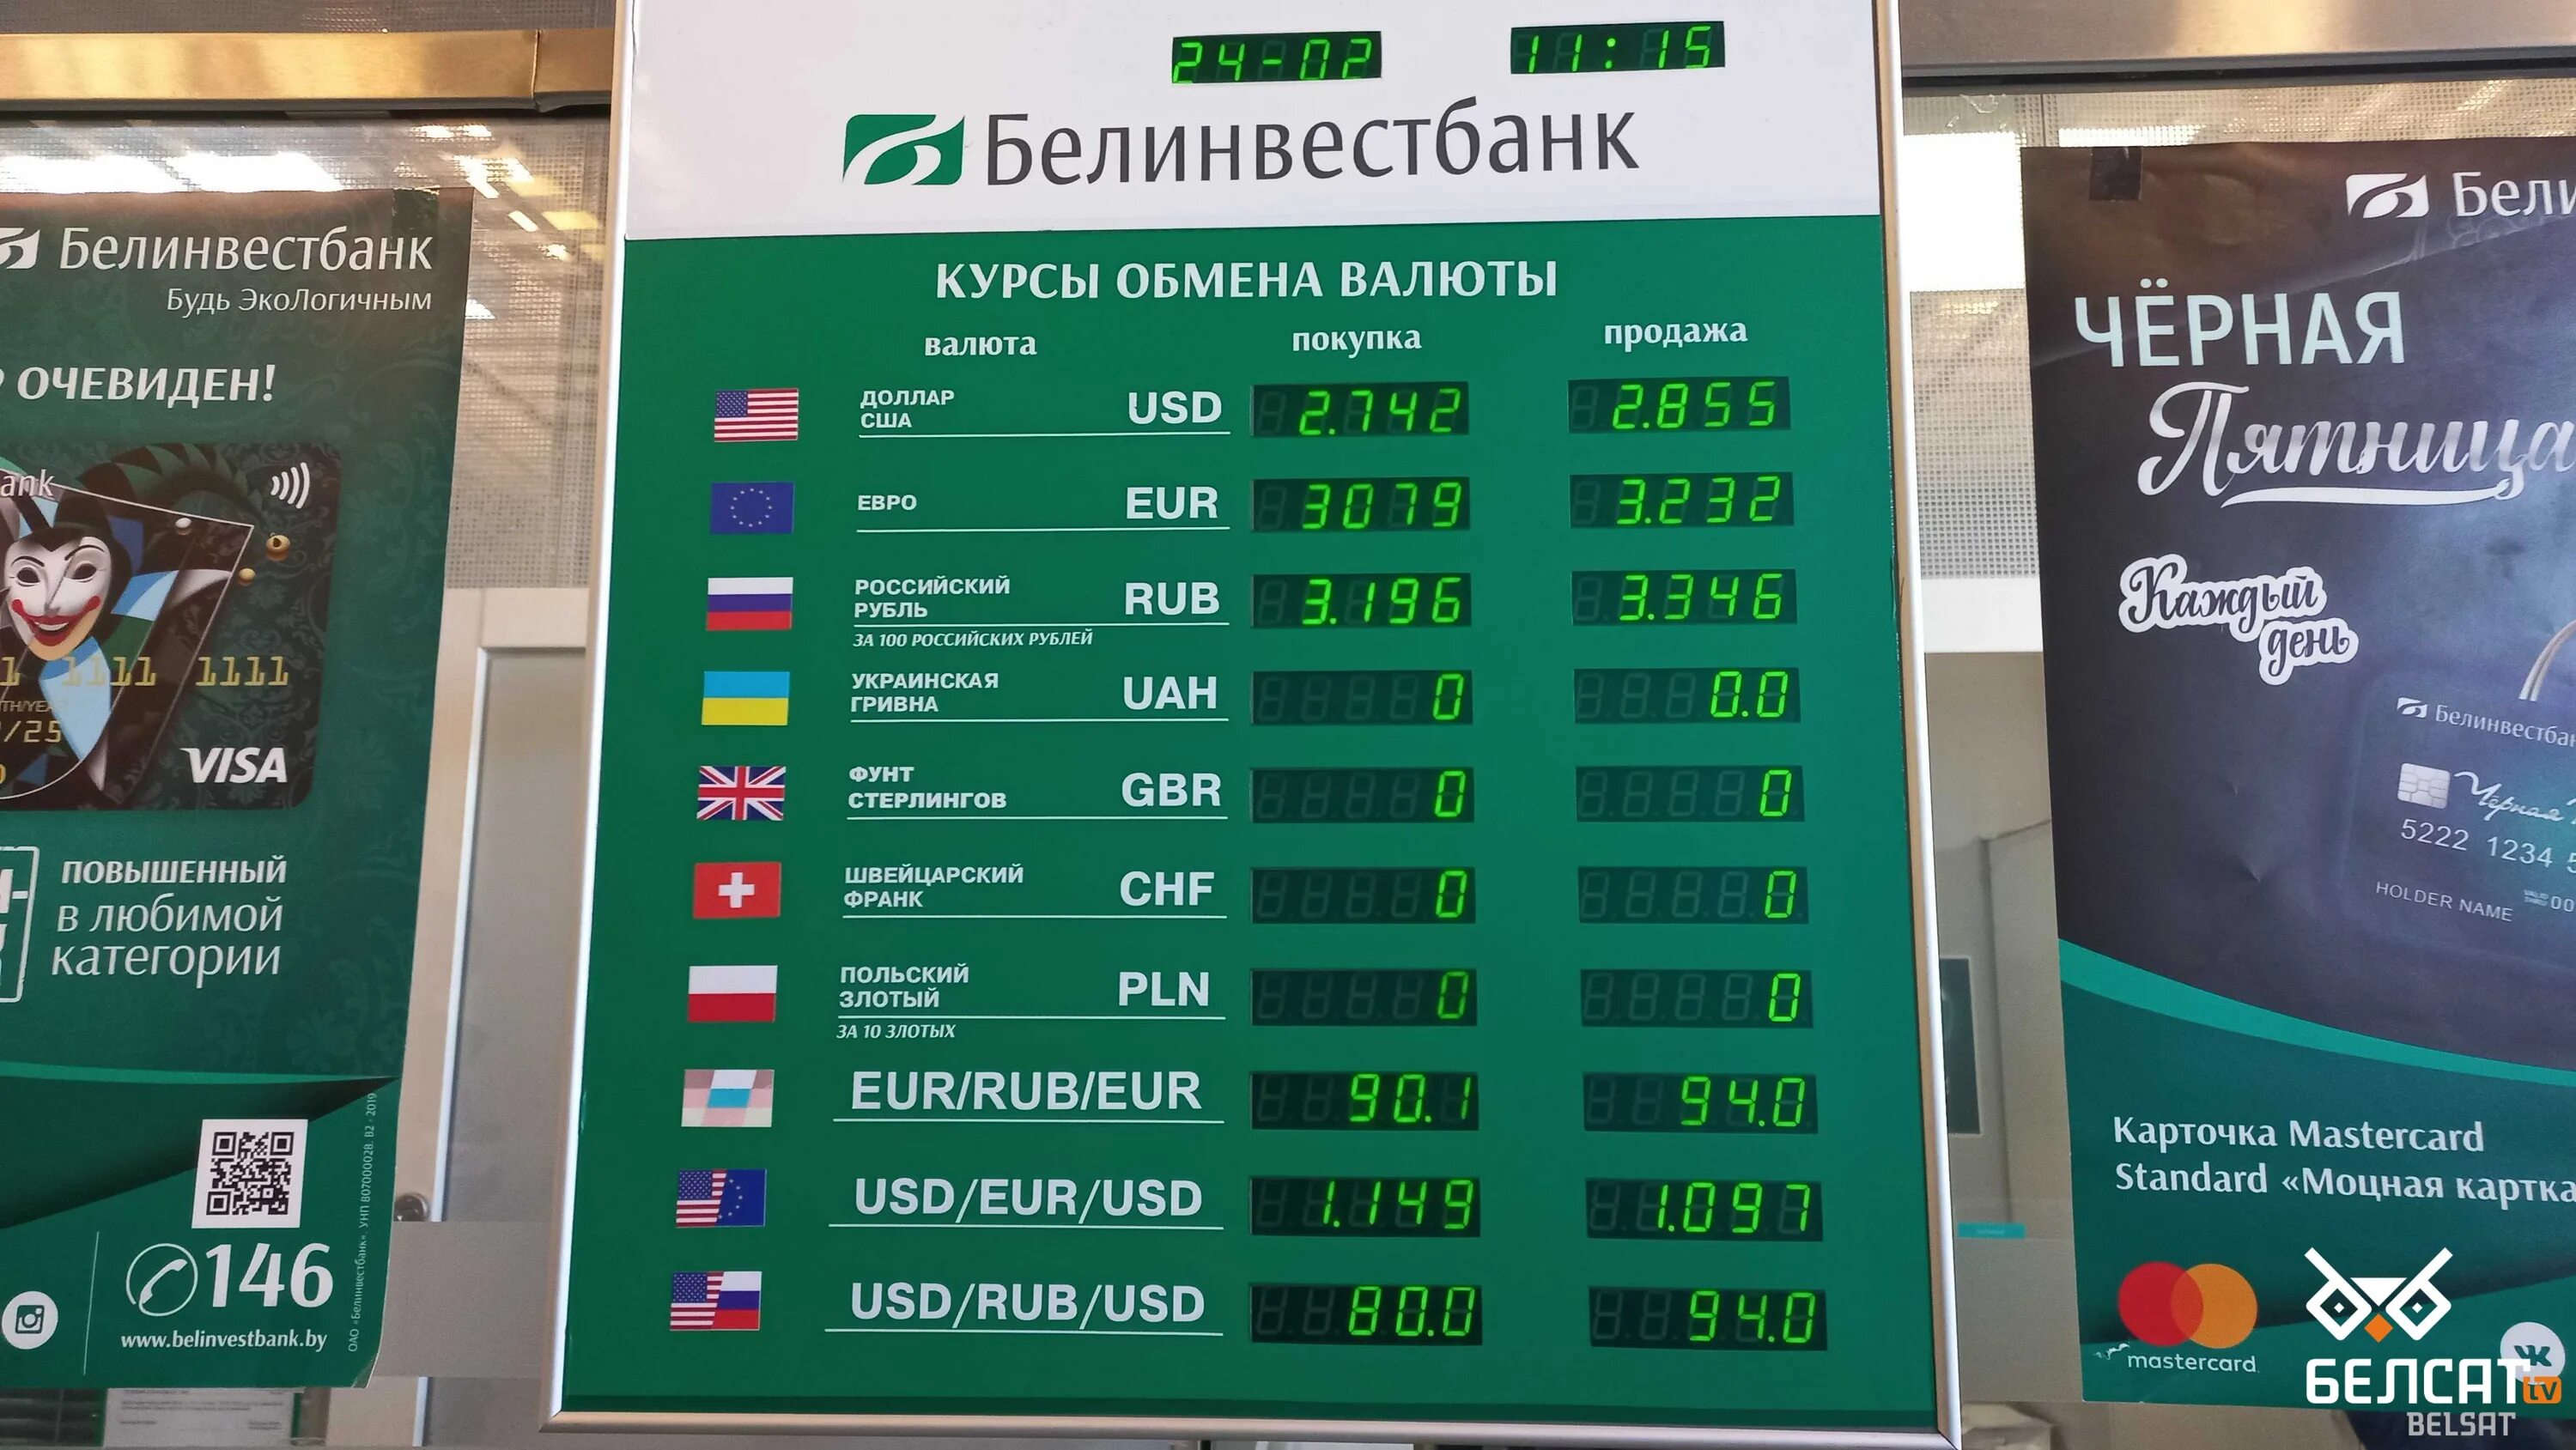 Купить доллары по выгодному курсу. Курсы валют. Курсы валют на сегодня. Курсы валют в банках. Курс рубля в обменных пунктах.